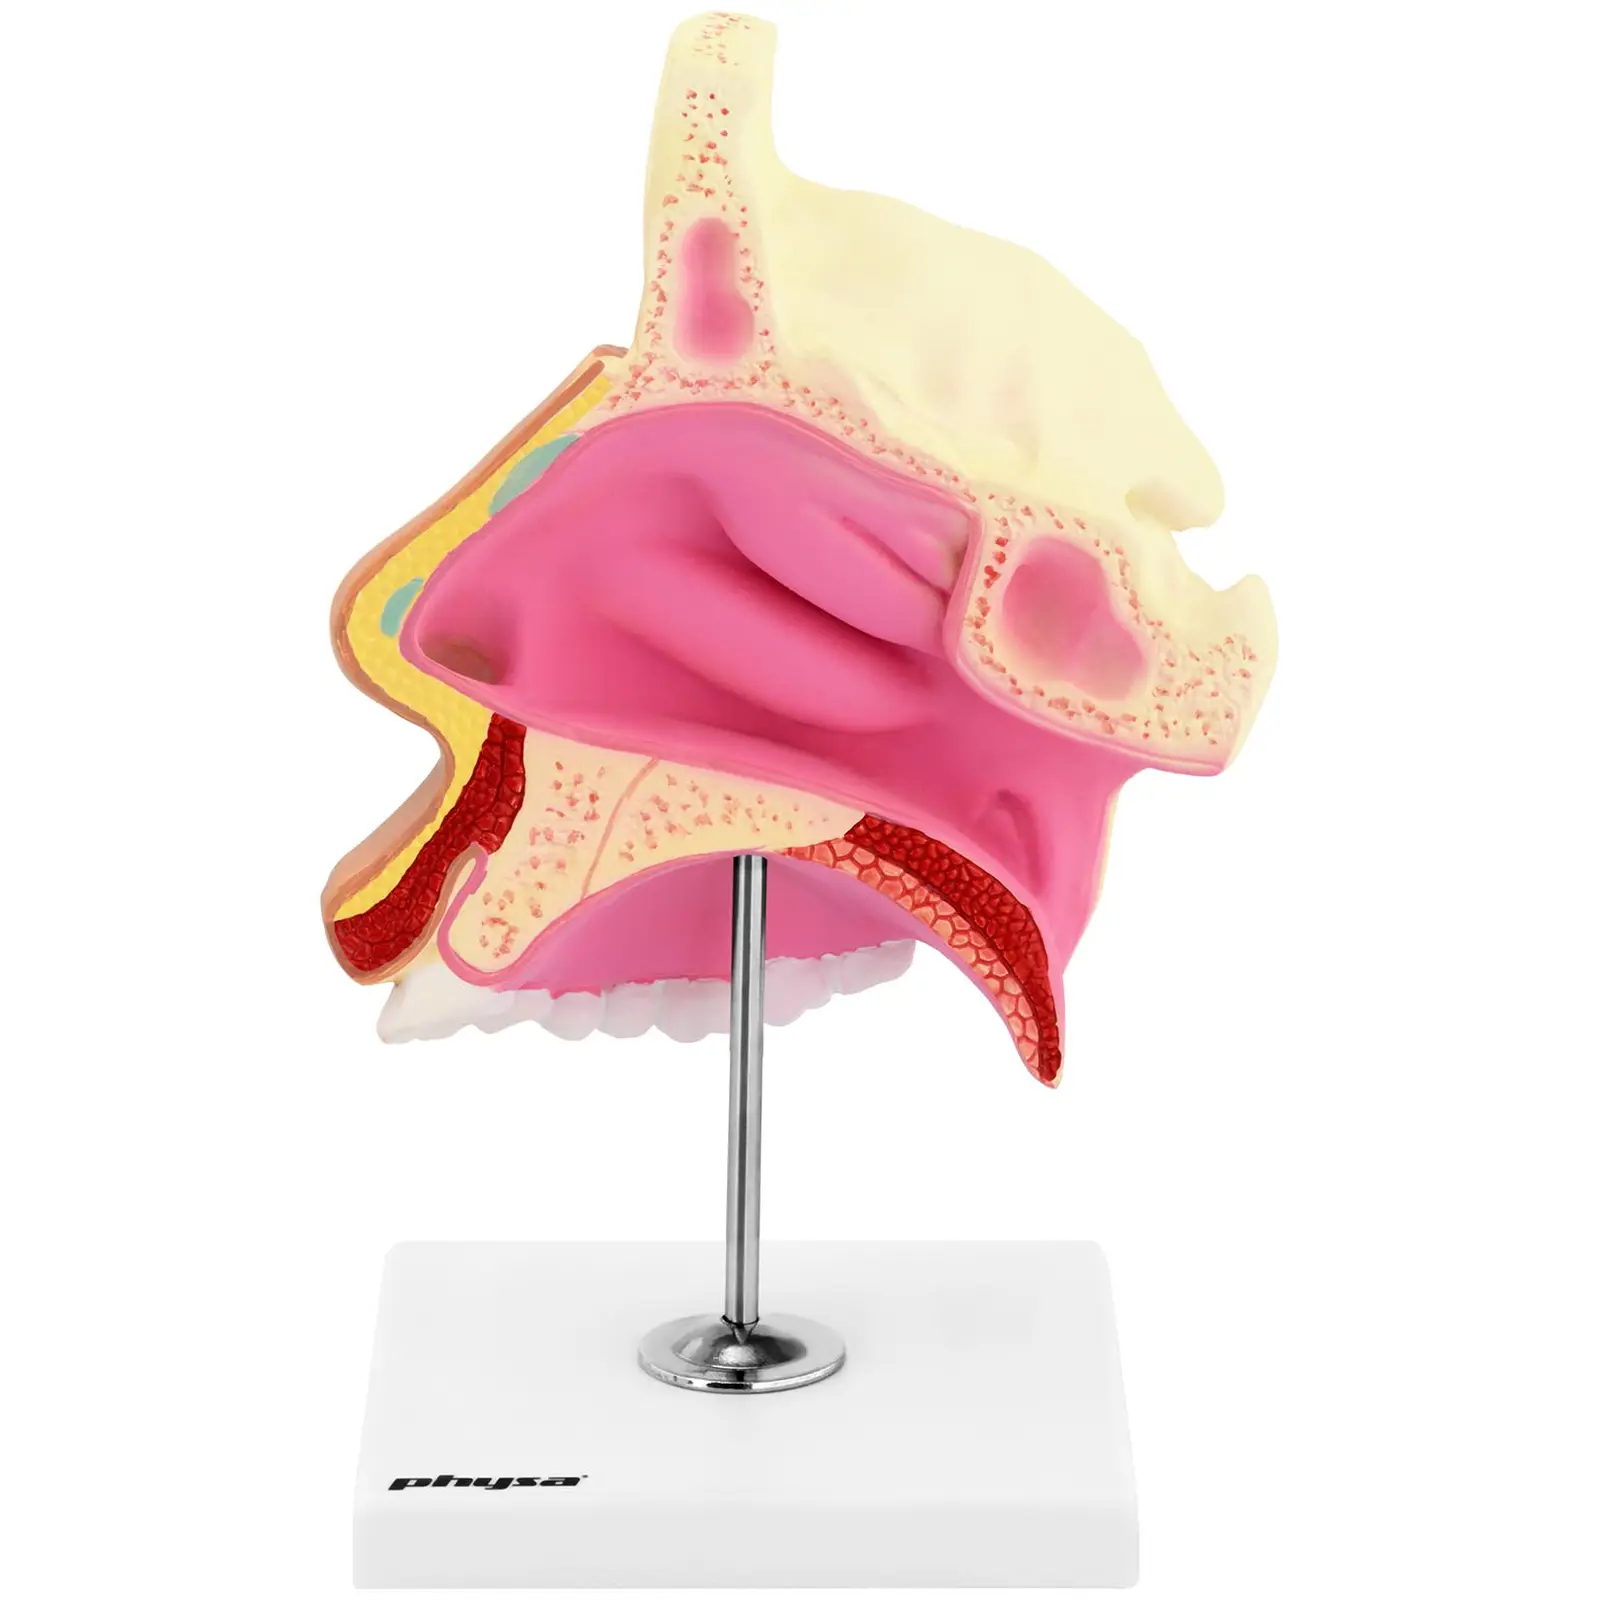 Modello anatomico - Cavità nasale - A grandezza naturale